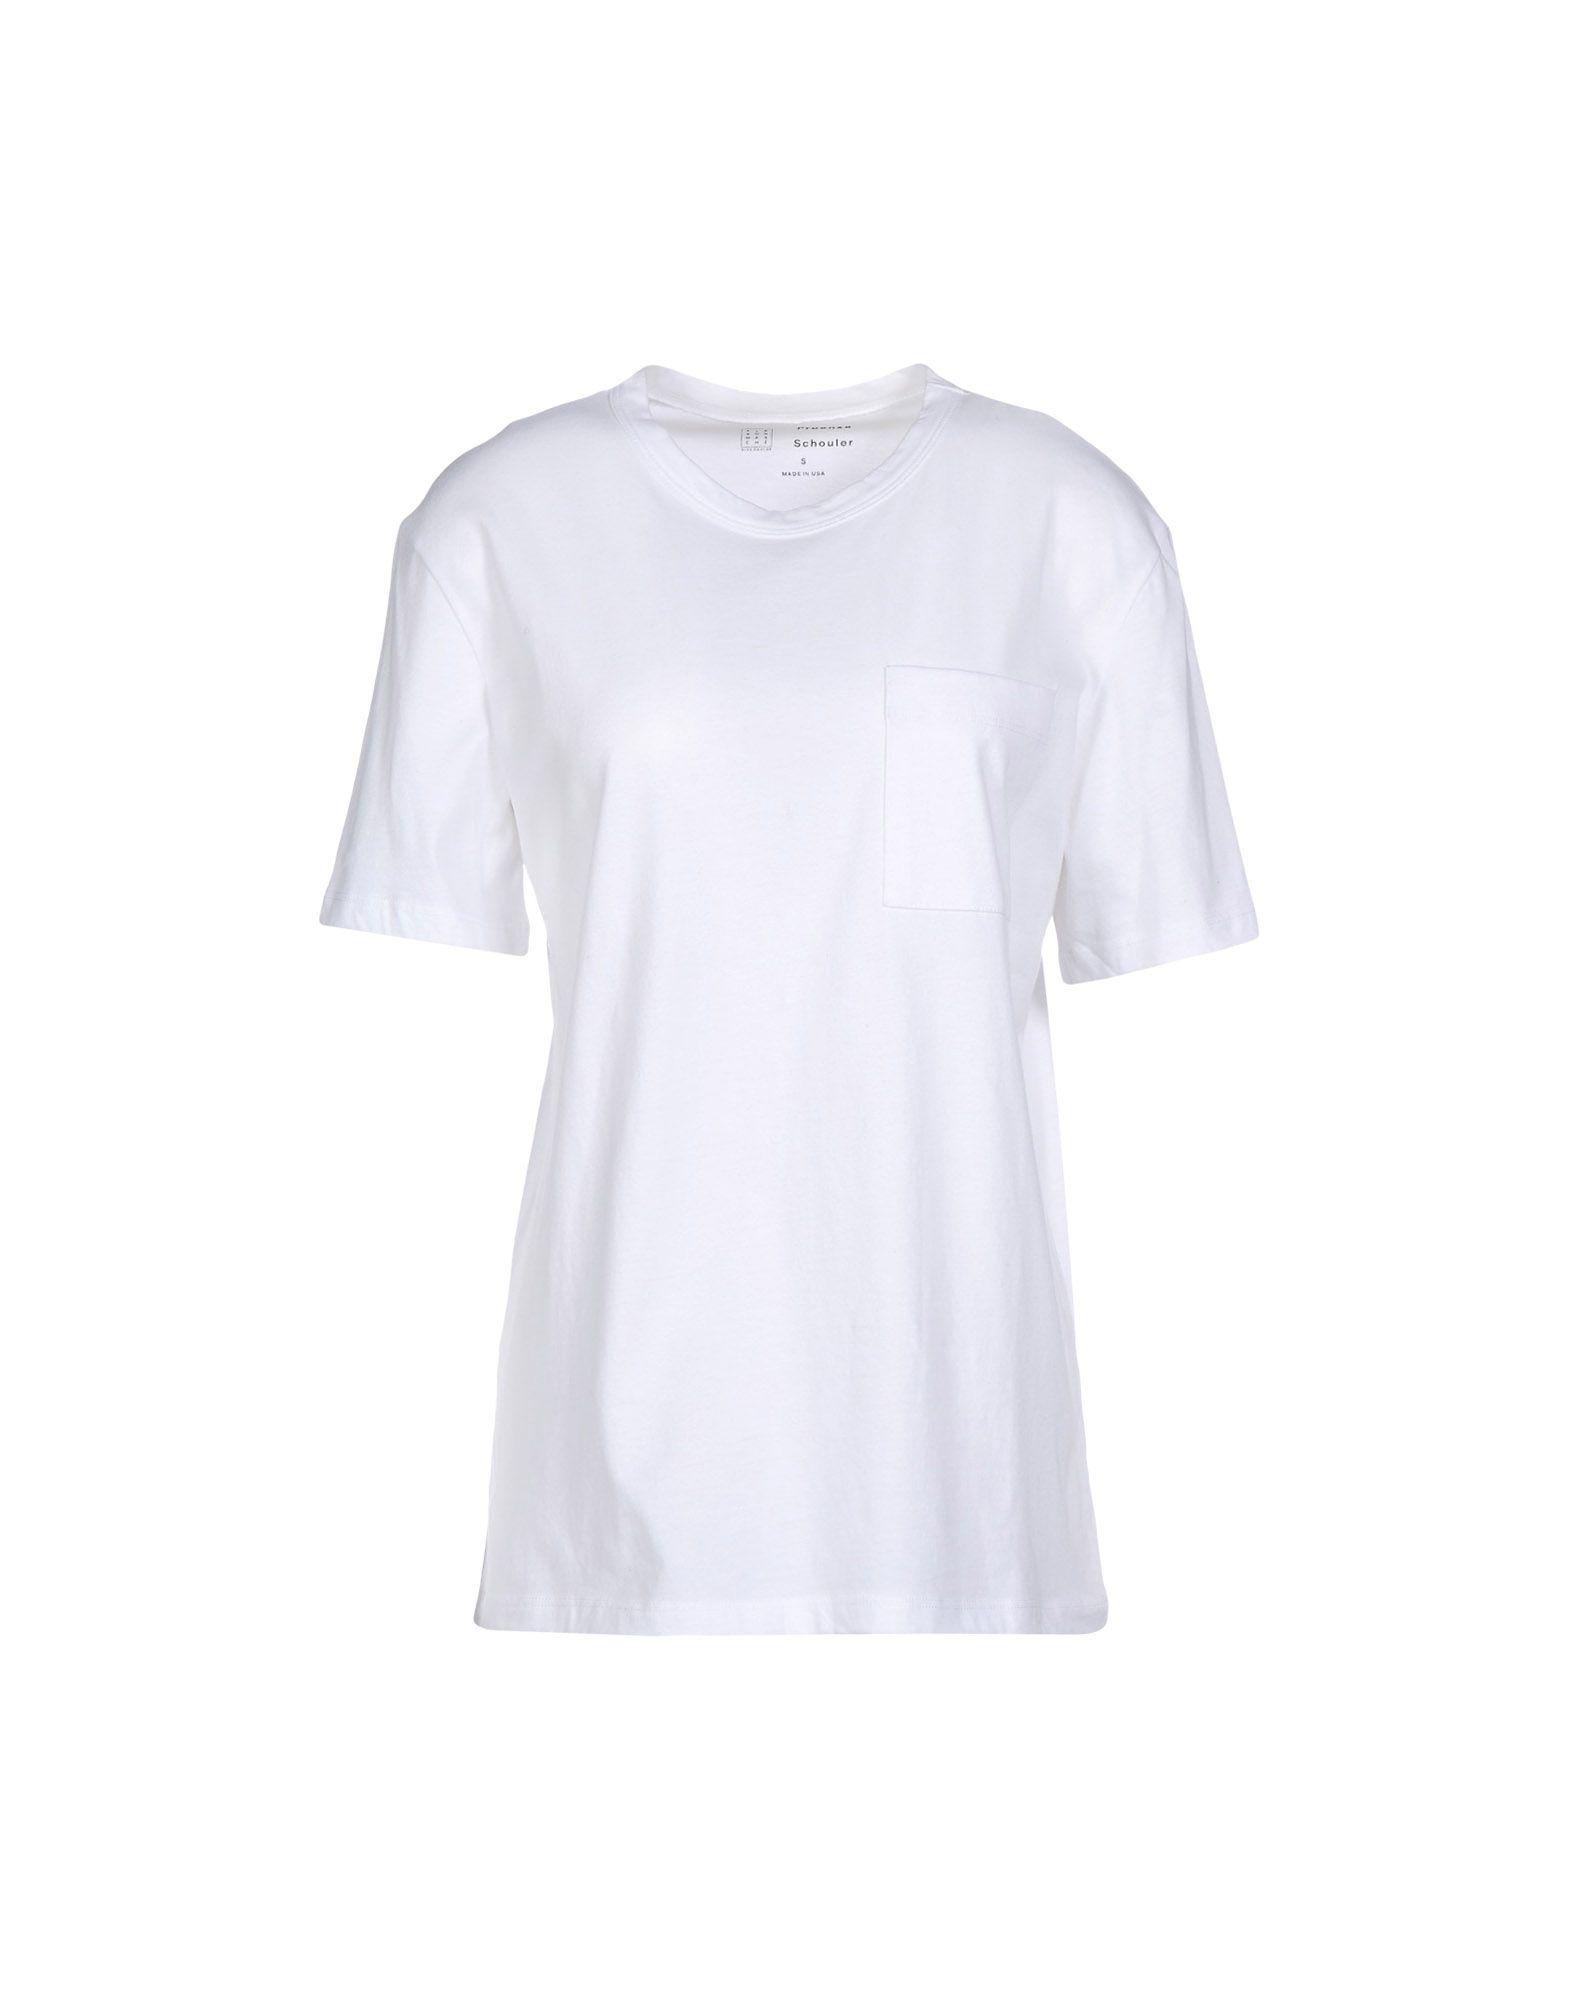 Proenza Schouler T-shirt In White | ModeSens